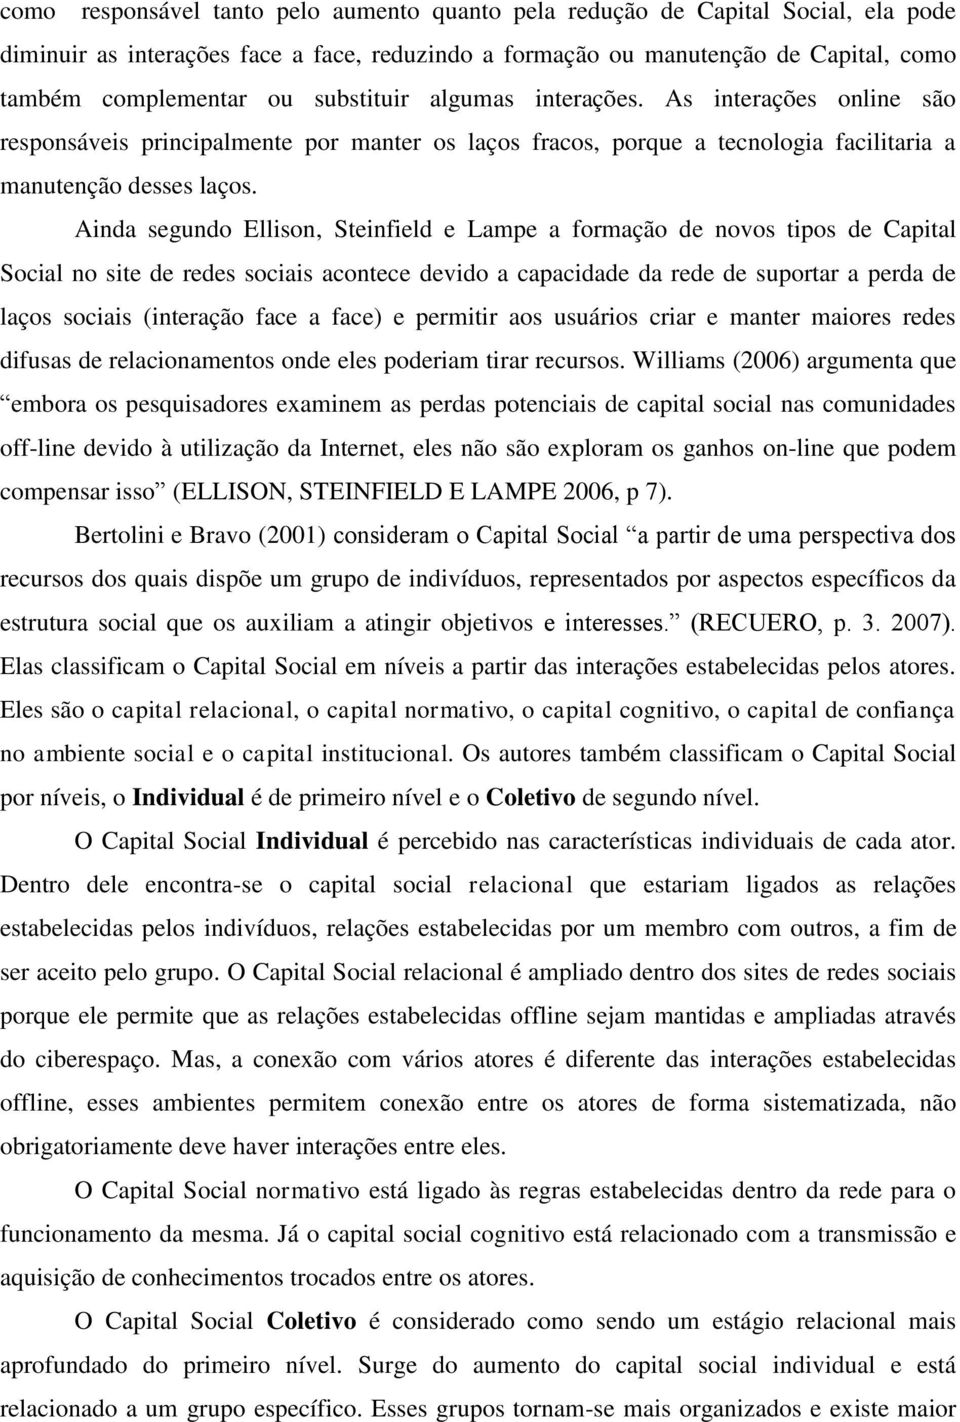 Ainda segundo Ellison, Steinfield e Lampe a formação de novos tipos de Capital Social no site de redes sociais acontece devido a capacidade da rede de suportar a perda de laços sociais (interação